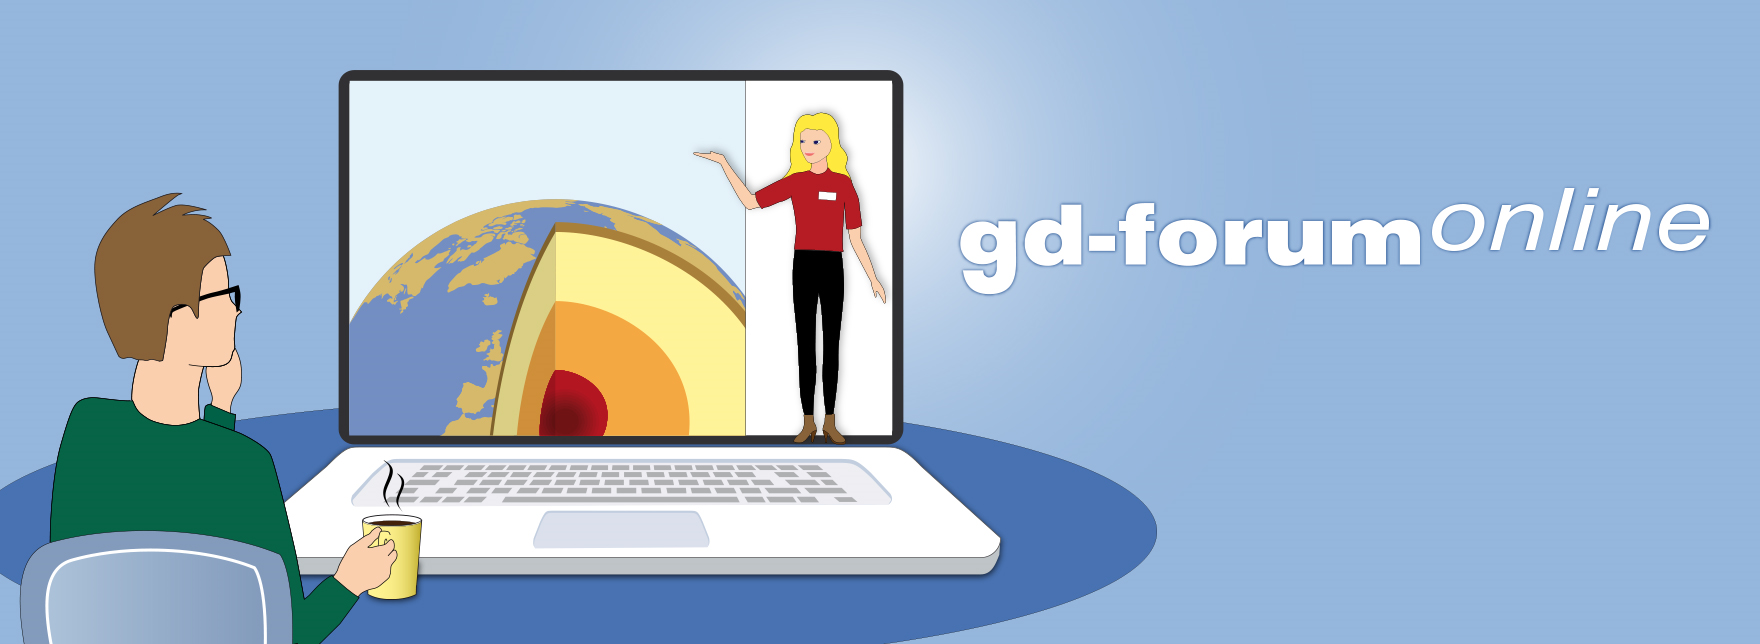 gd-forum online: Neues aus Forschungs- und Entwicklungsprojekten